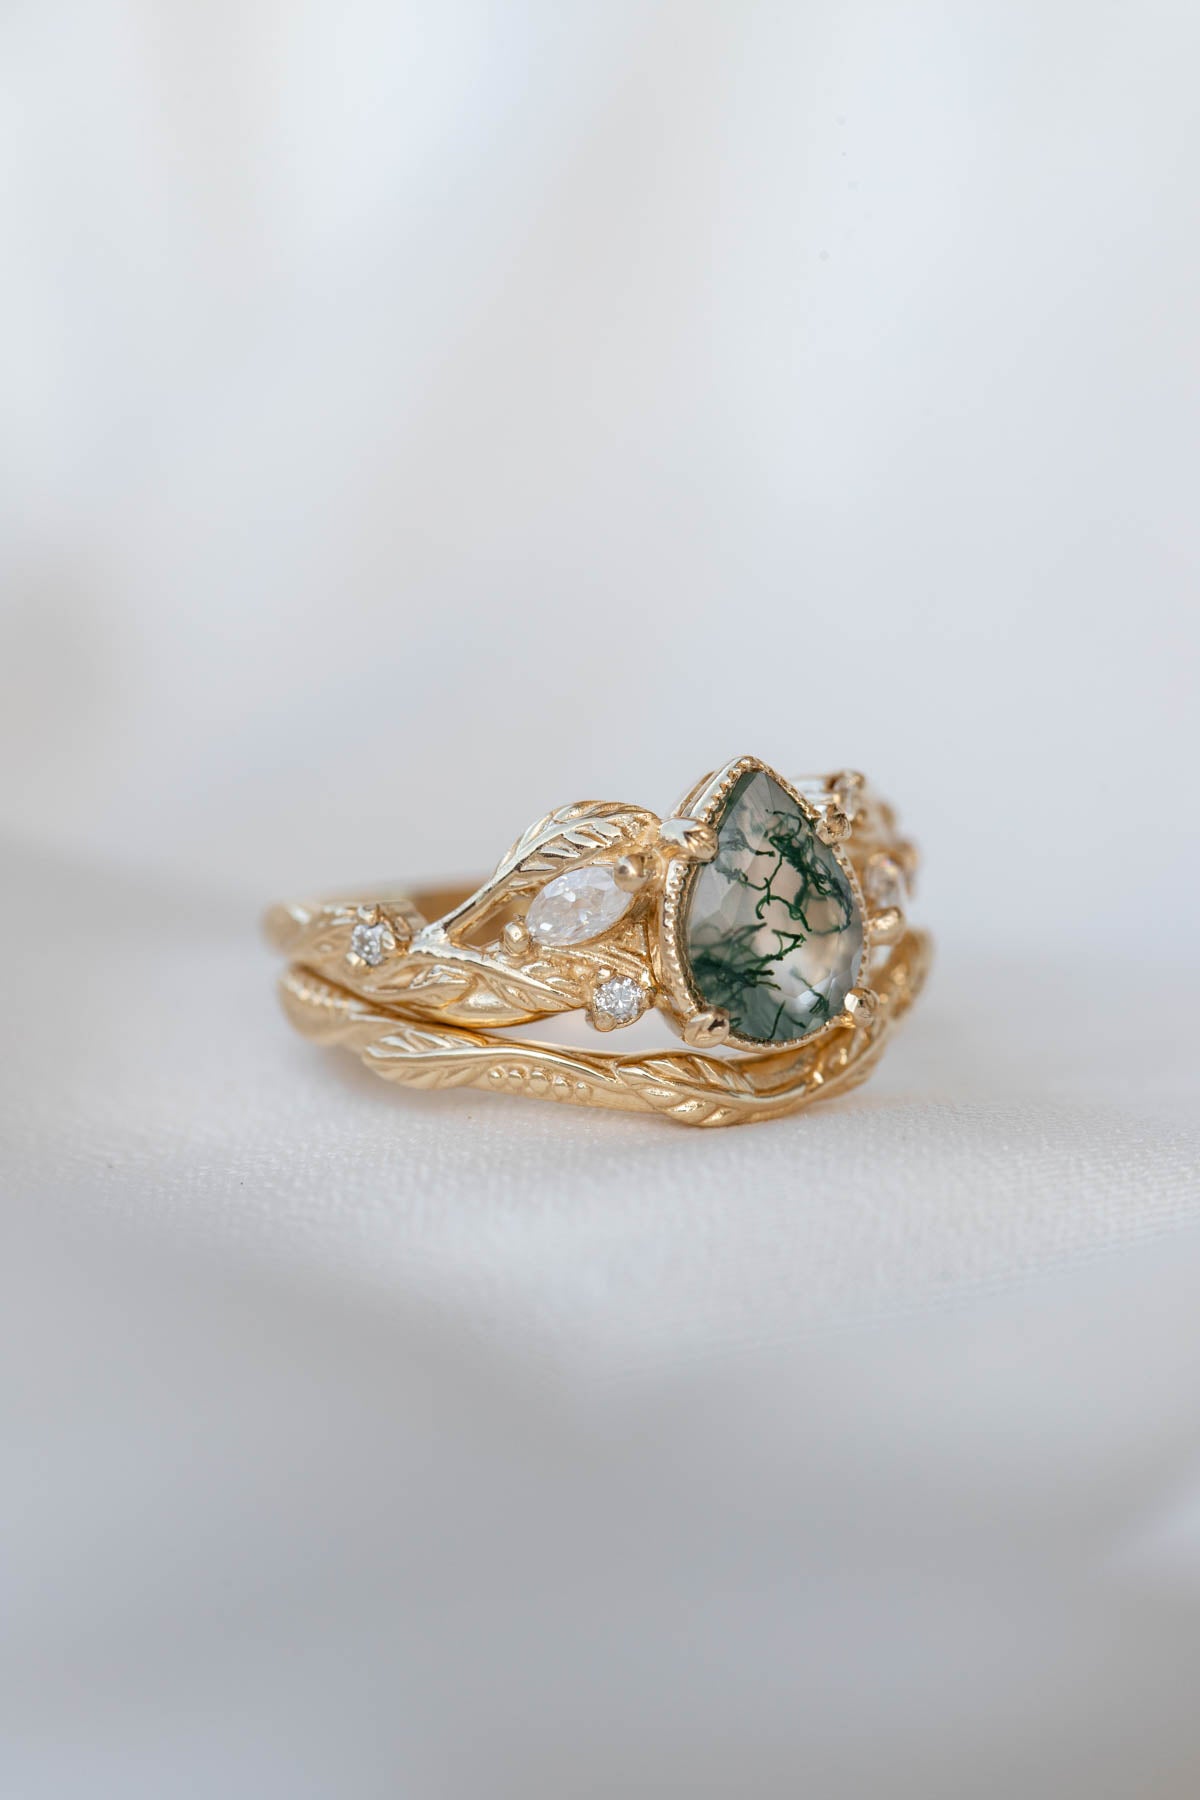 Patricia asymmetric | custom bridal ring set with pear cut gemstone 8x6 mm - Eden Garden Jewelry™